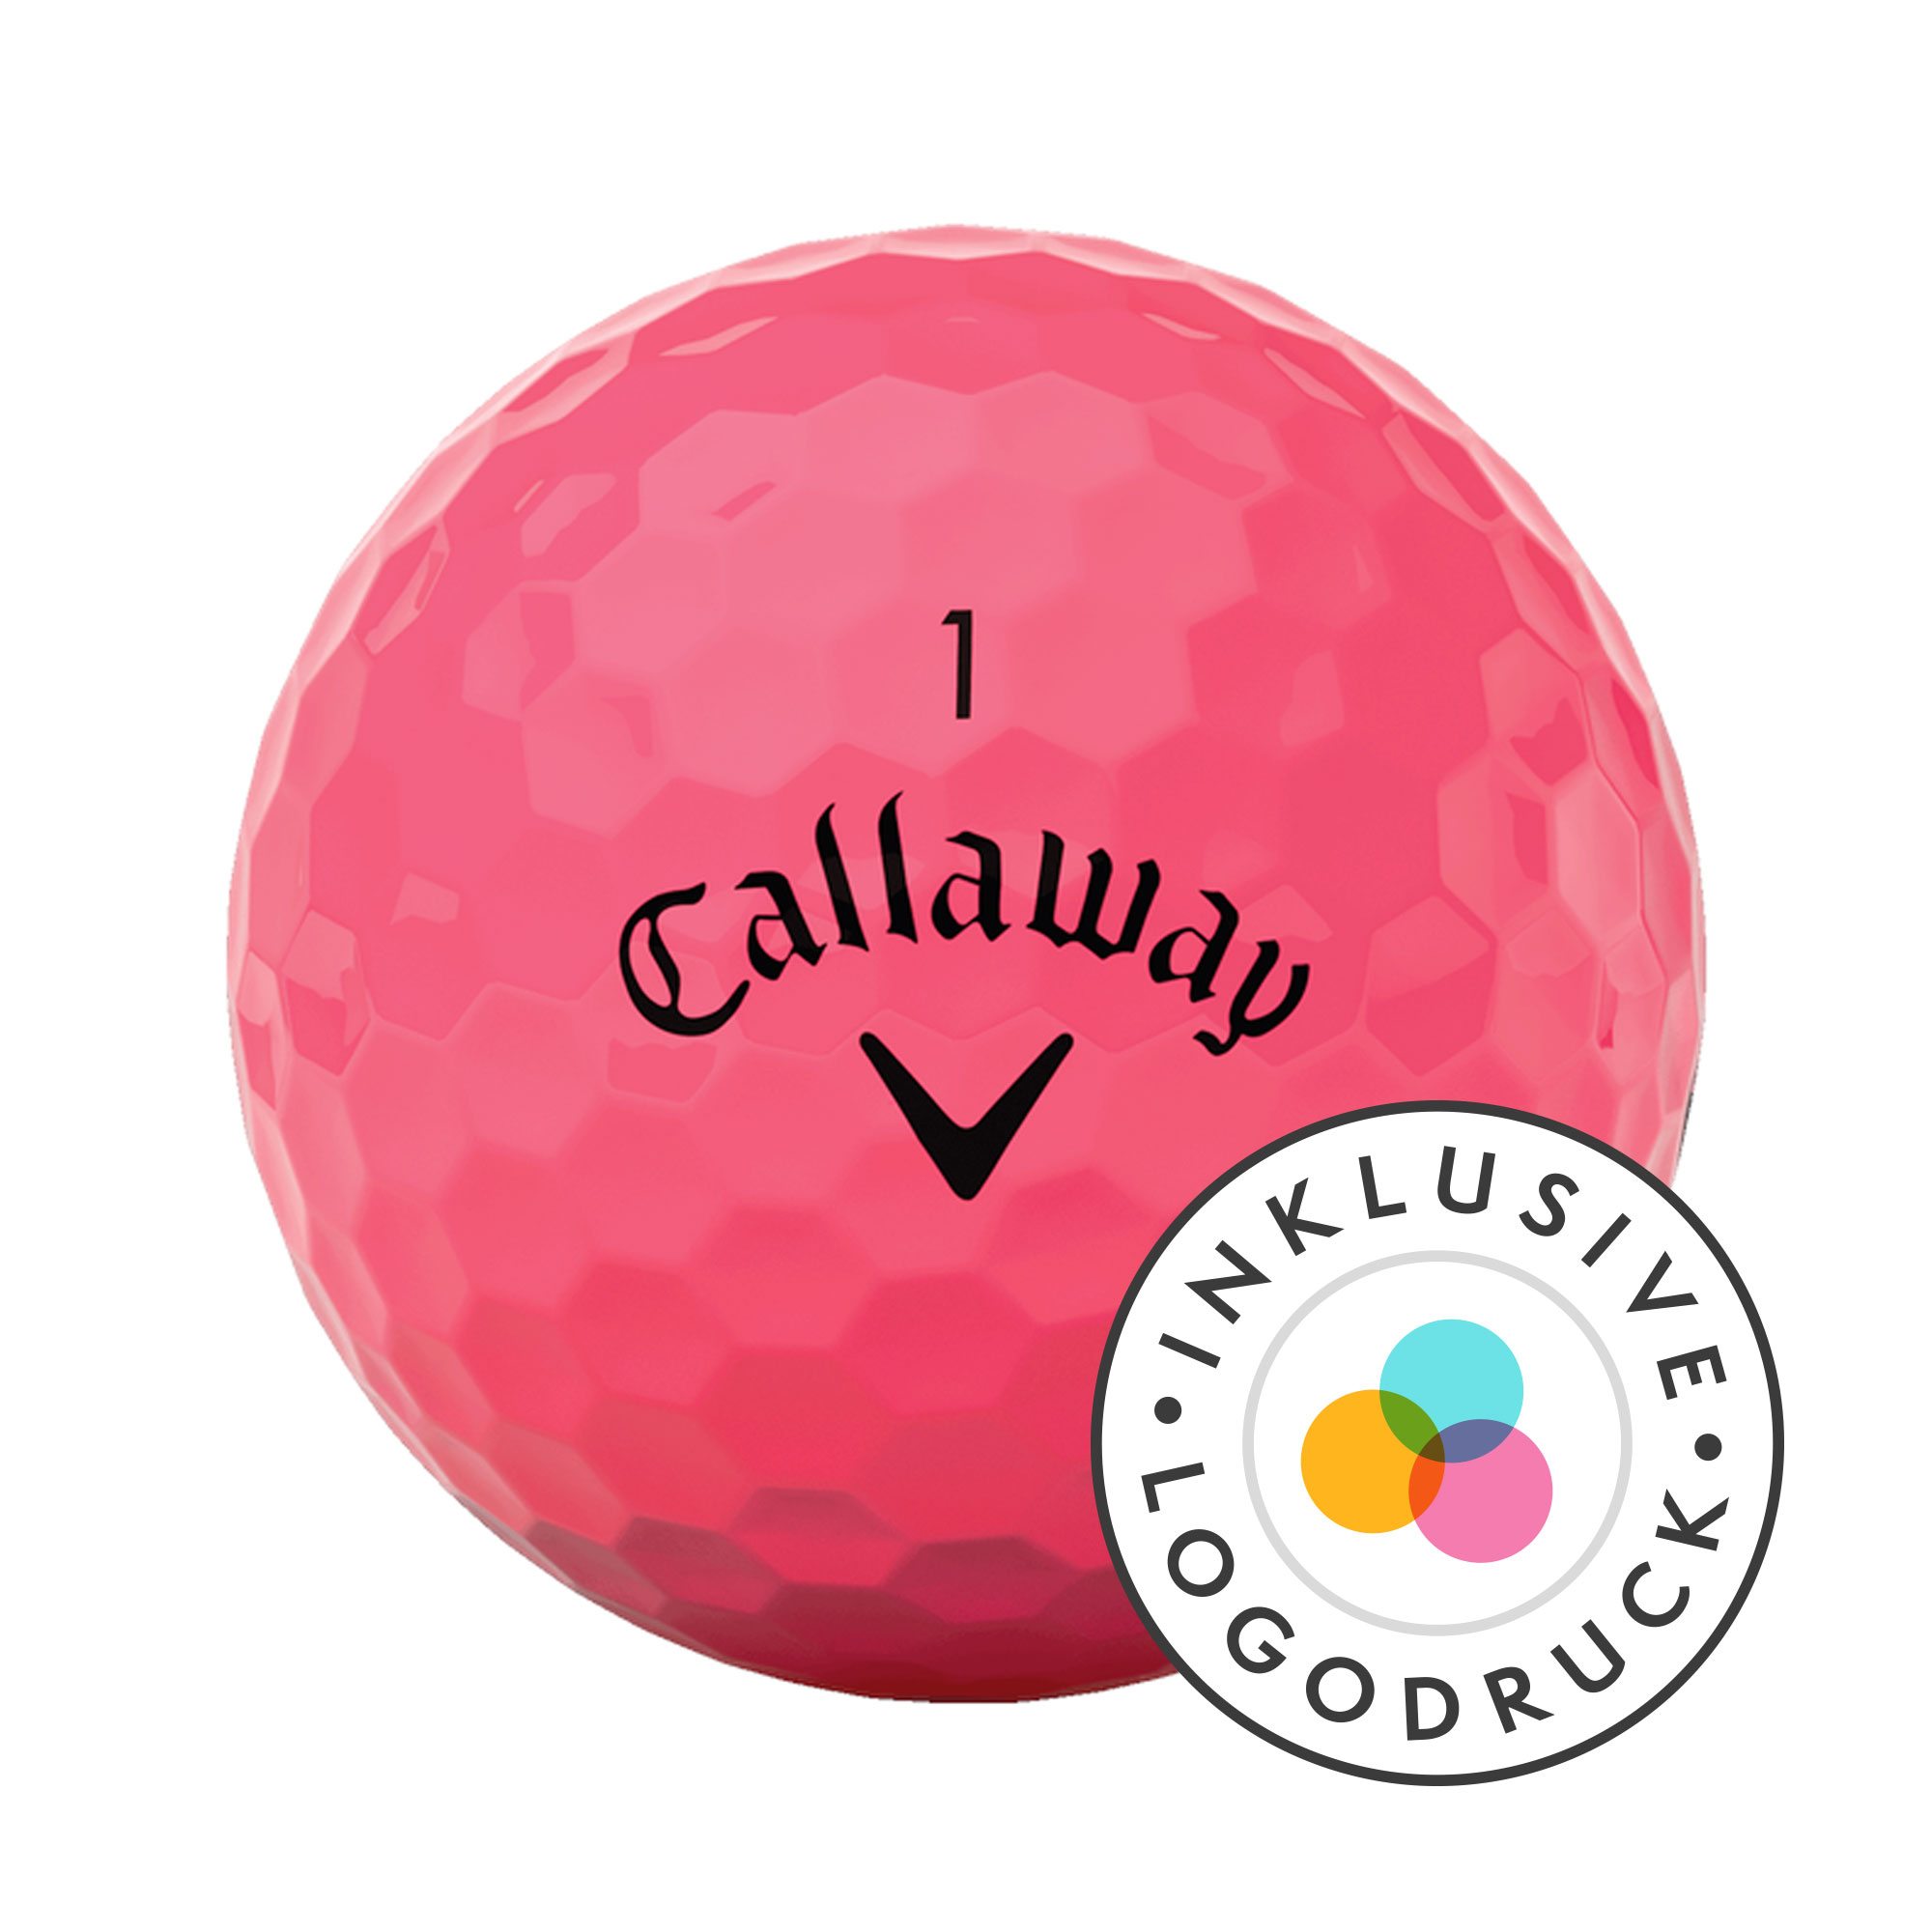 Callaway REVA Golfbälle bedruckt, pink (VPE à 12 Bälle)